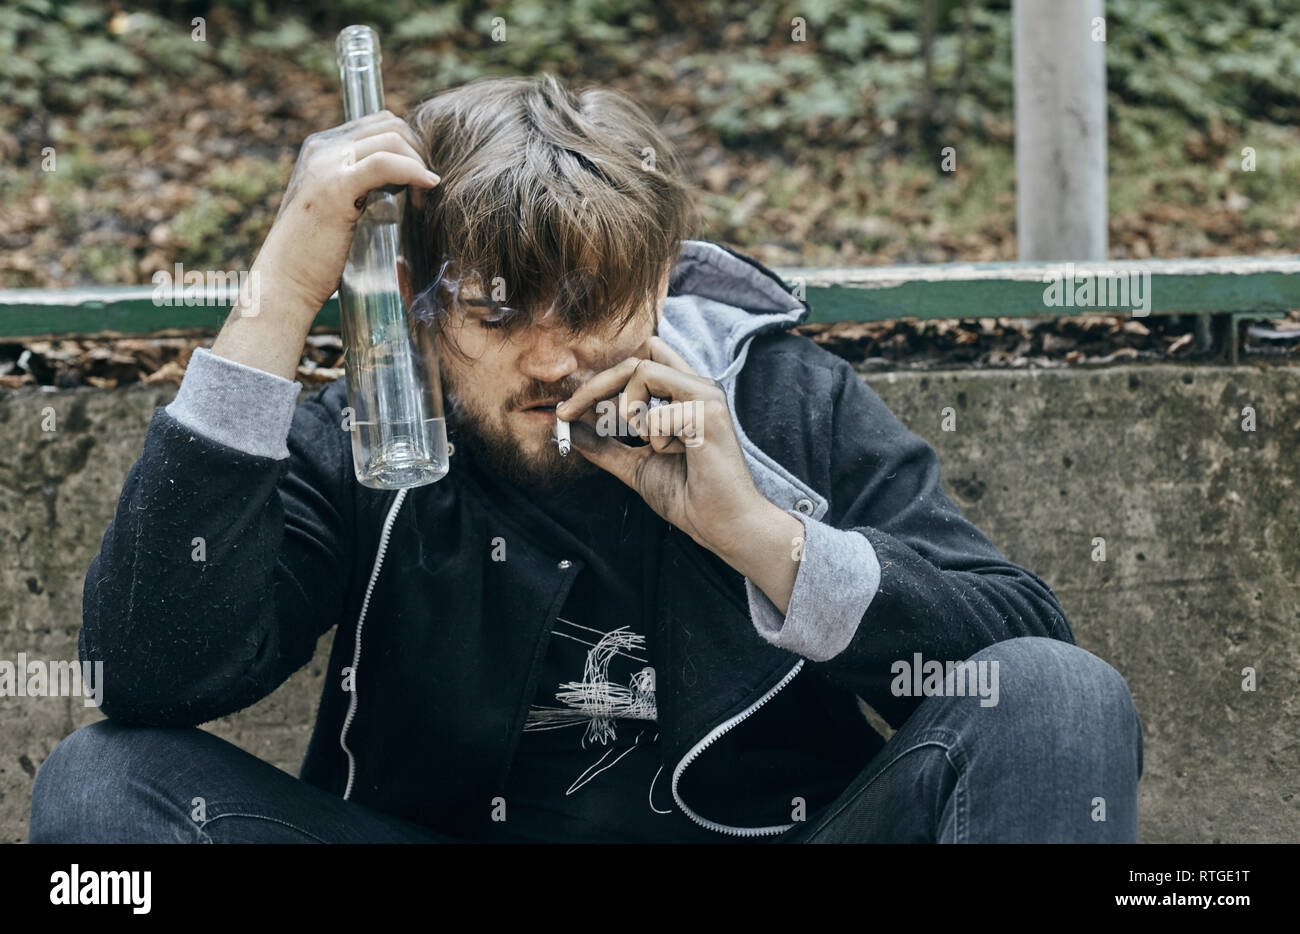 Der Mann hält ein Glas Wodka. Betrunkene Jugendliche. (Alkoholismus, Schmerz, Leid, Verzweiflung, Hoffnungslosigkeit, soziale Problem der Abhängigkeit Konzept) Stockfoto